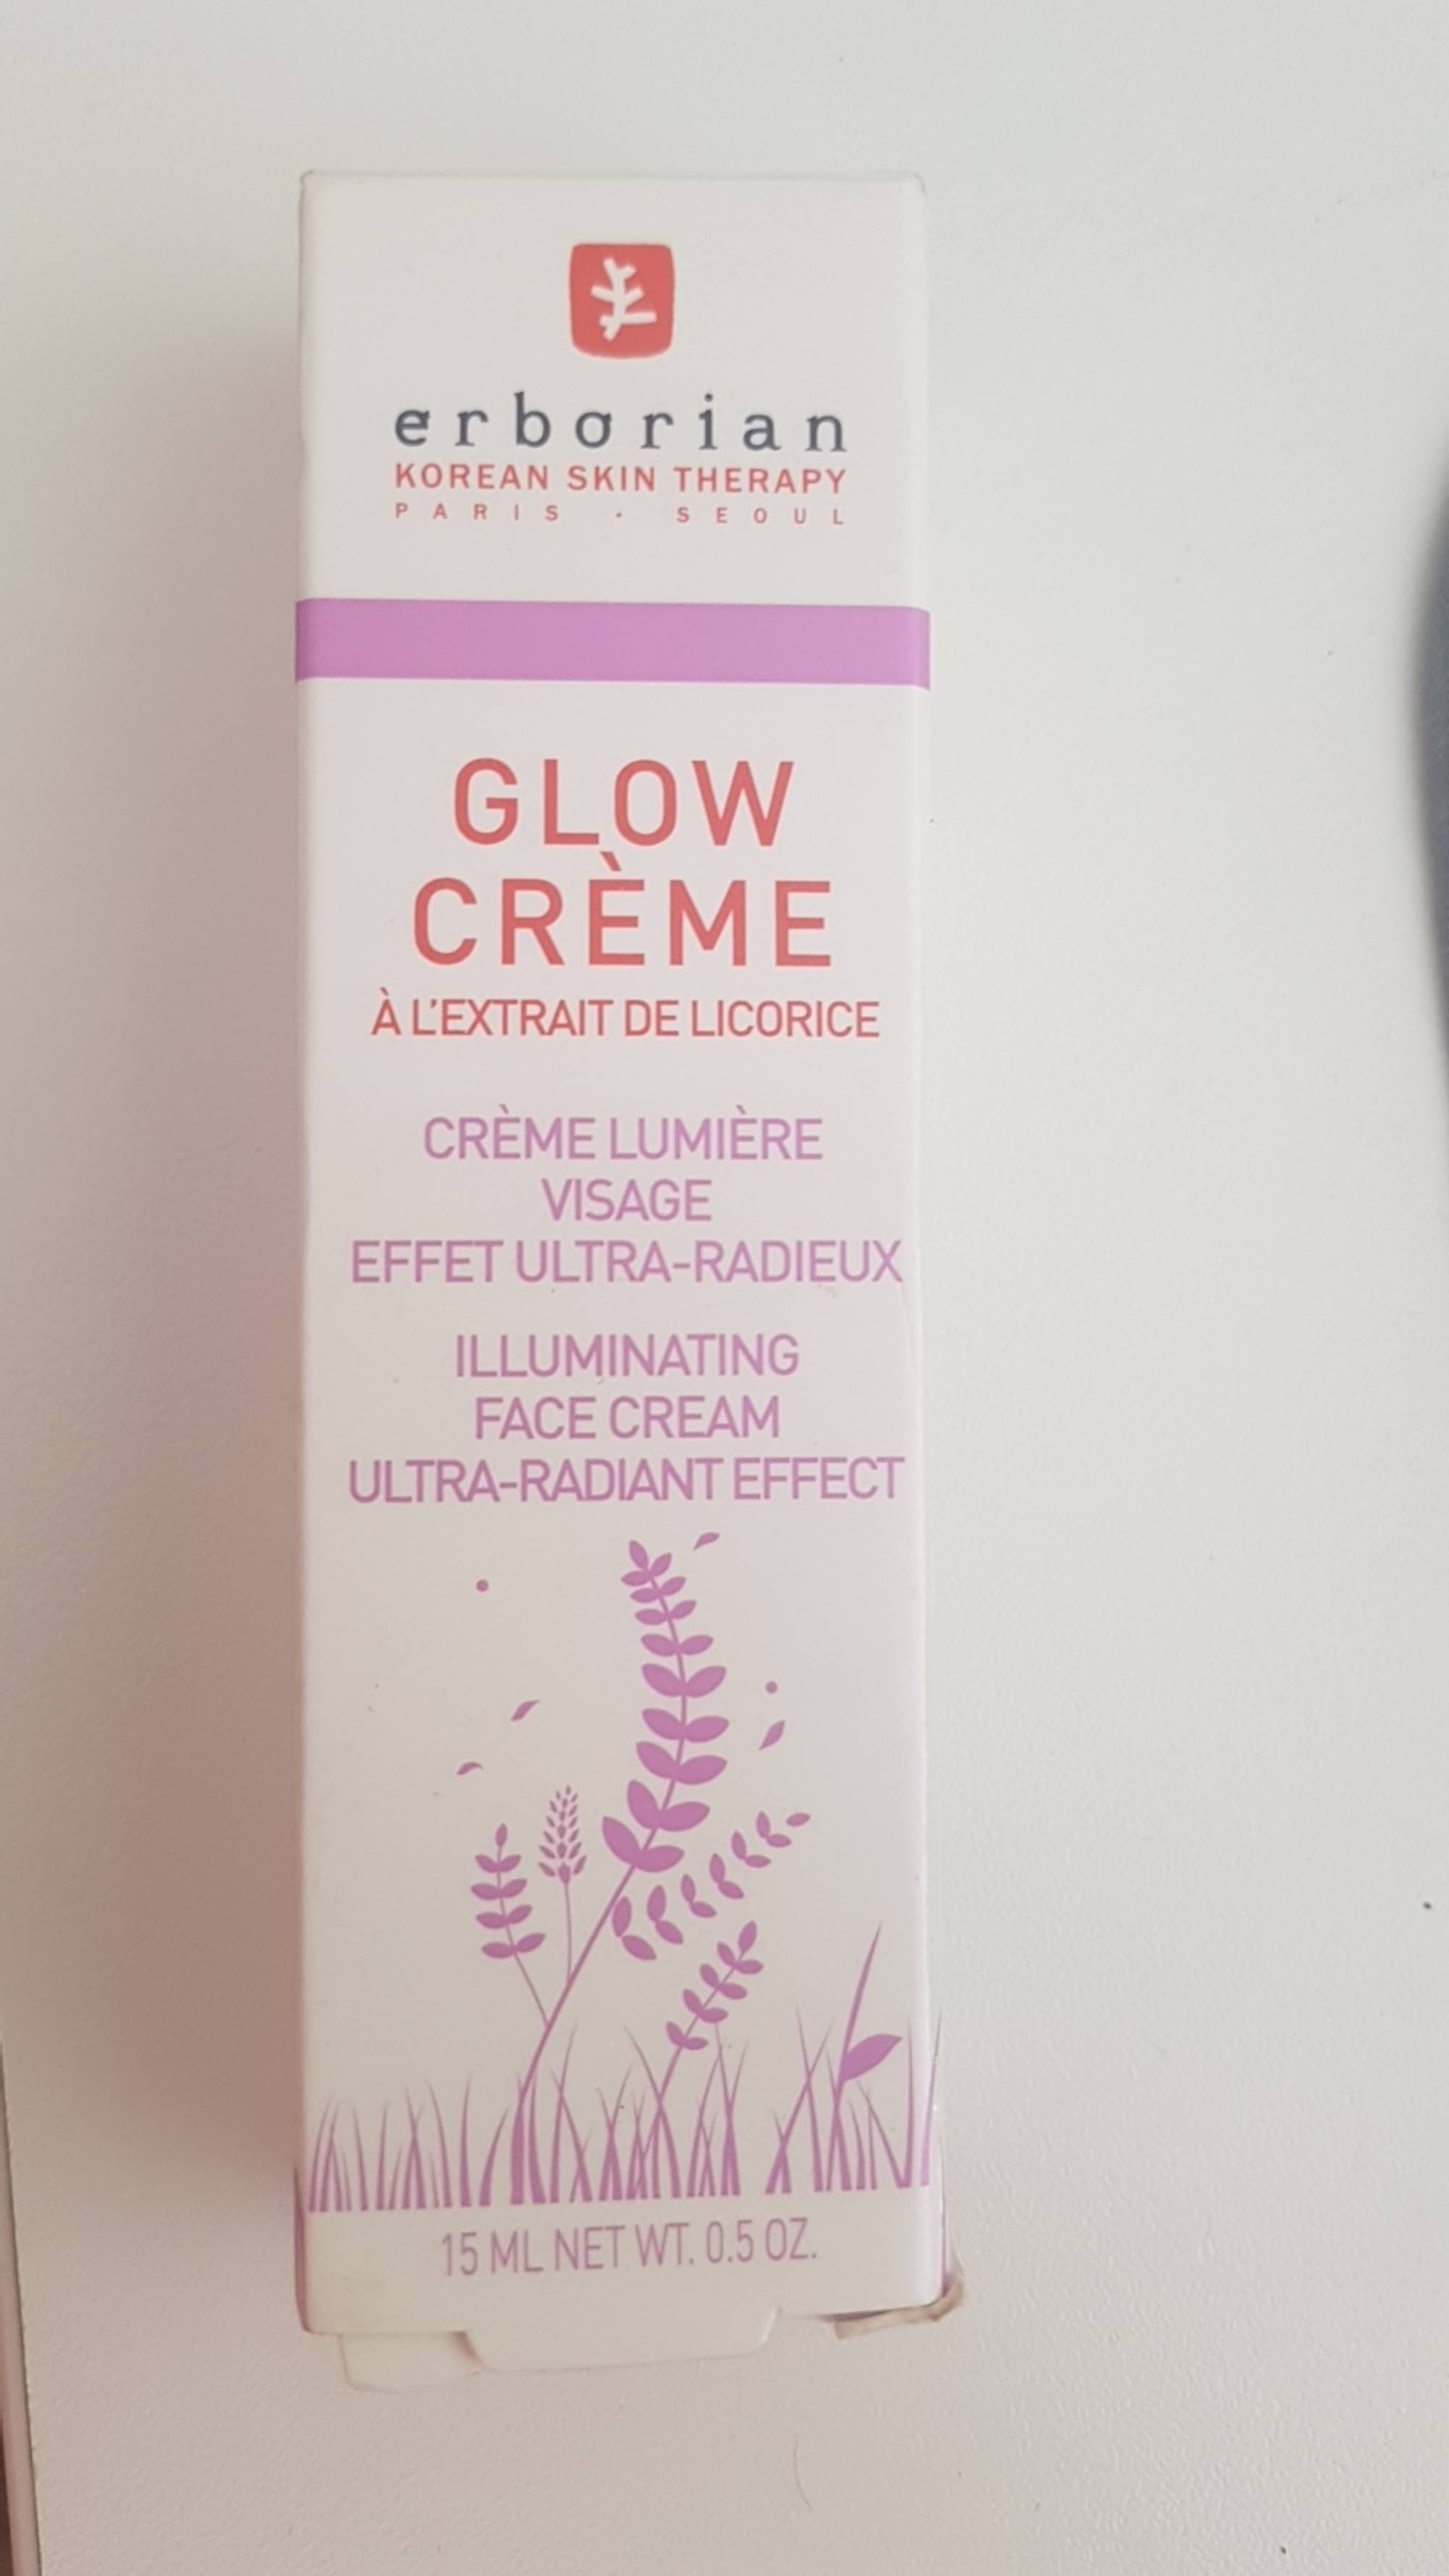 ERBORIAN - Glow crème - Crème lumière visage